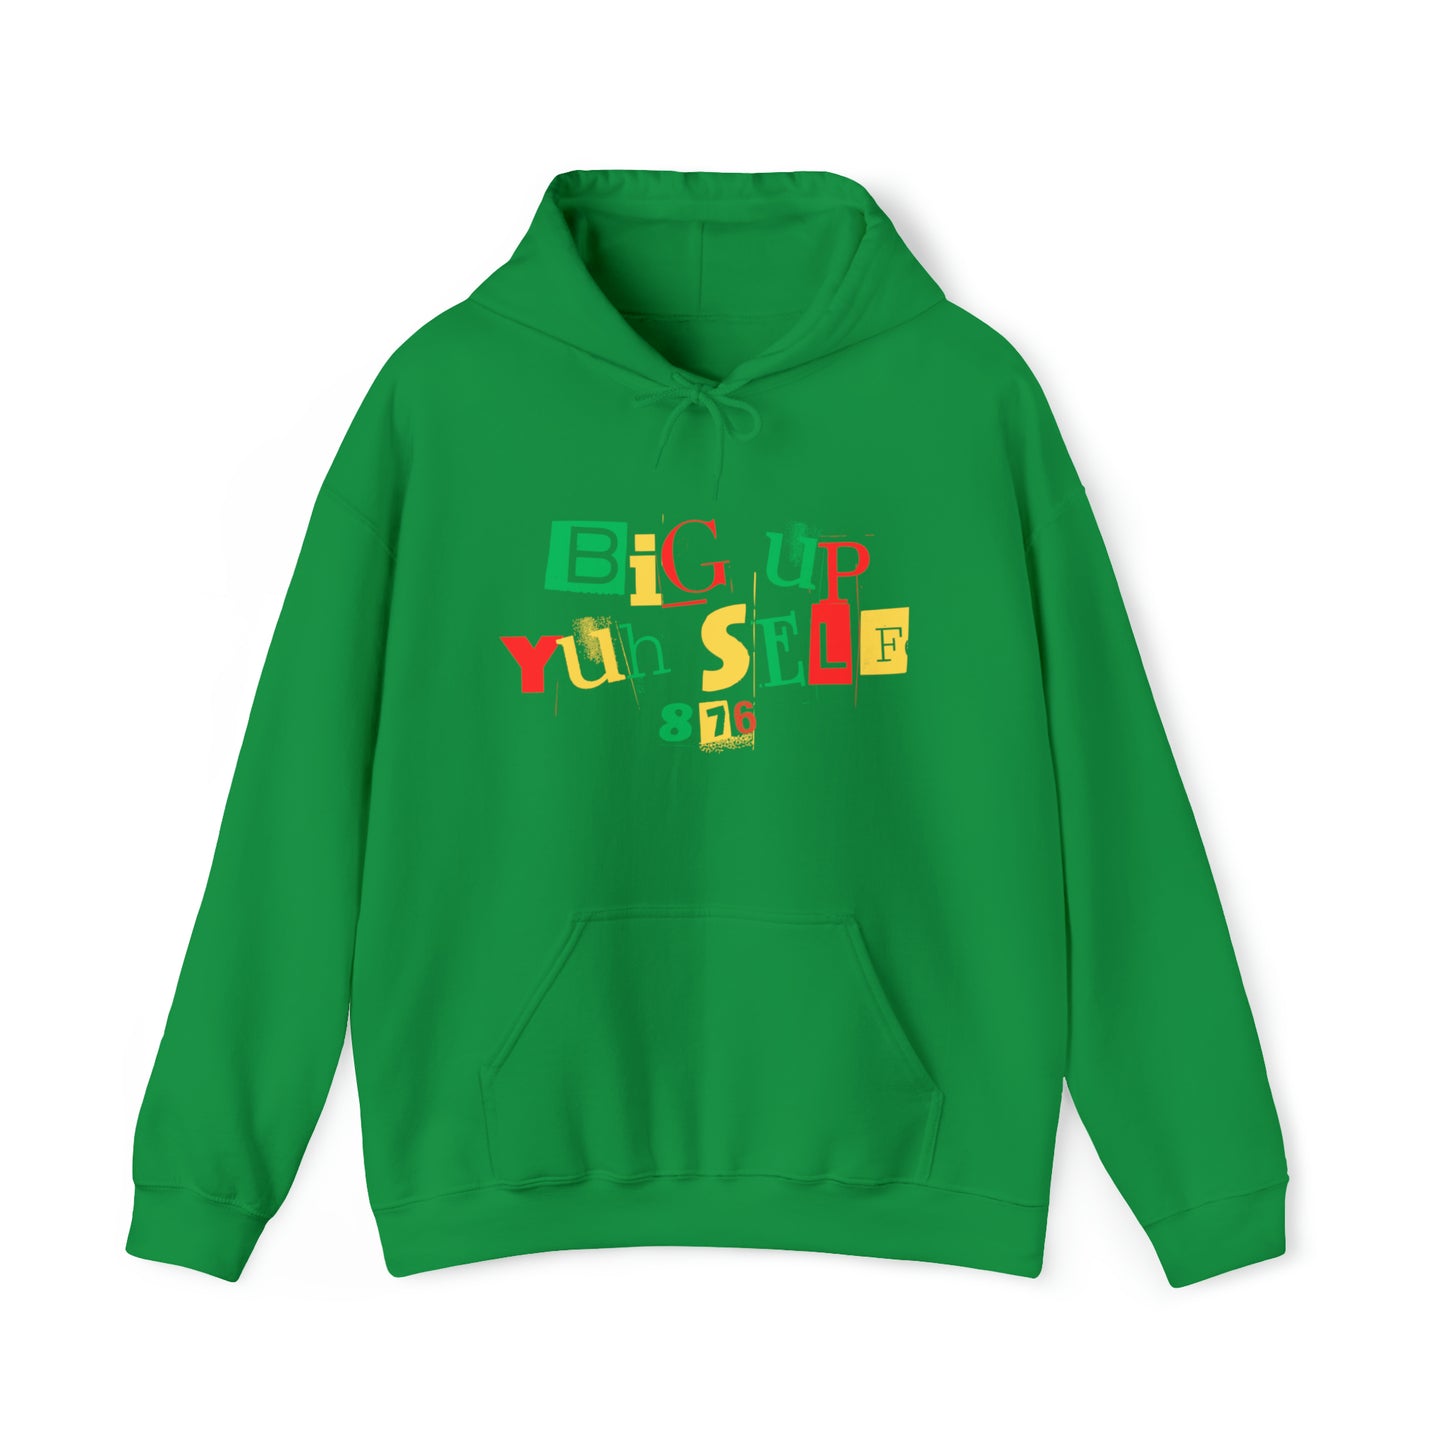 Carib - Big Up Yuh Self Hooded Sweatshirt